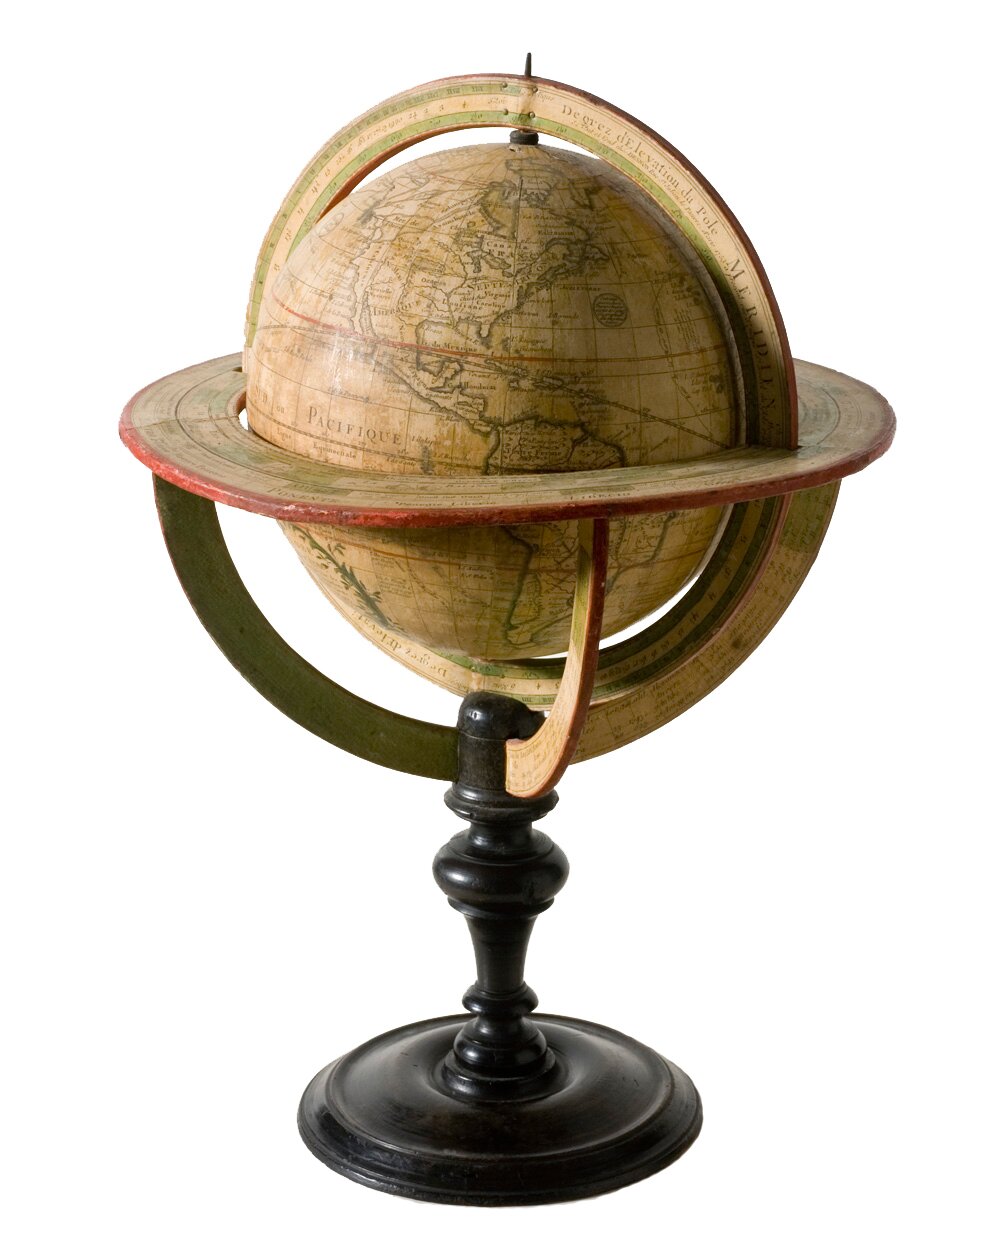 Globus z 1765 roku Globus z 1765 roku Źródło: Minnesota Historical Society, licencja: CC BY-SA 3.0.